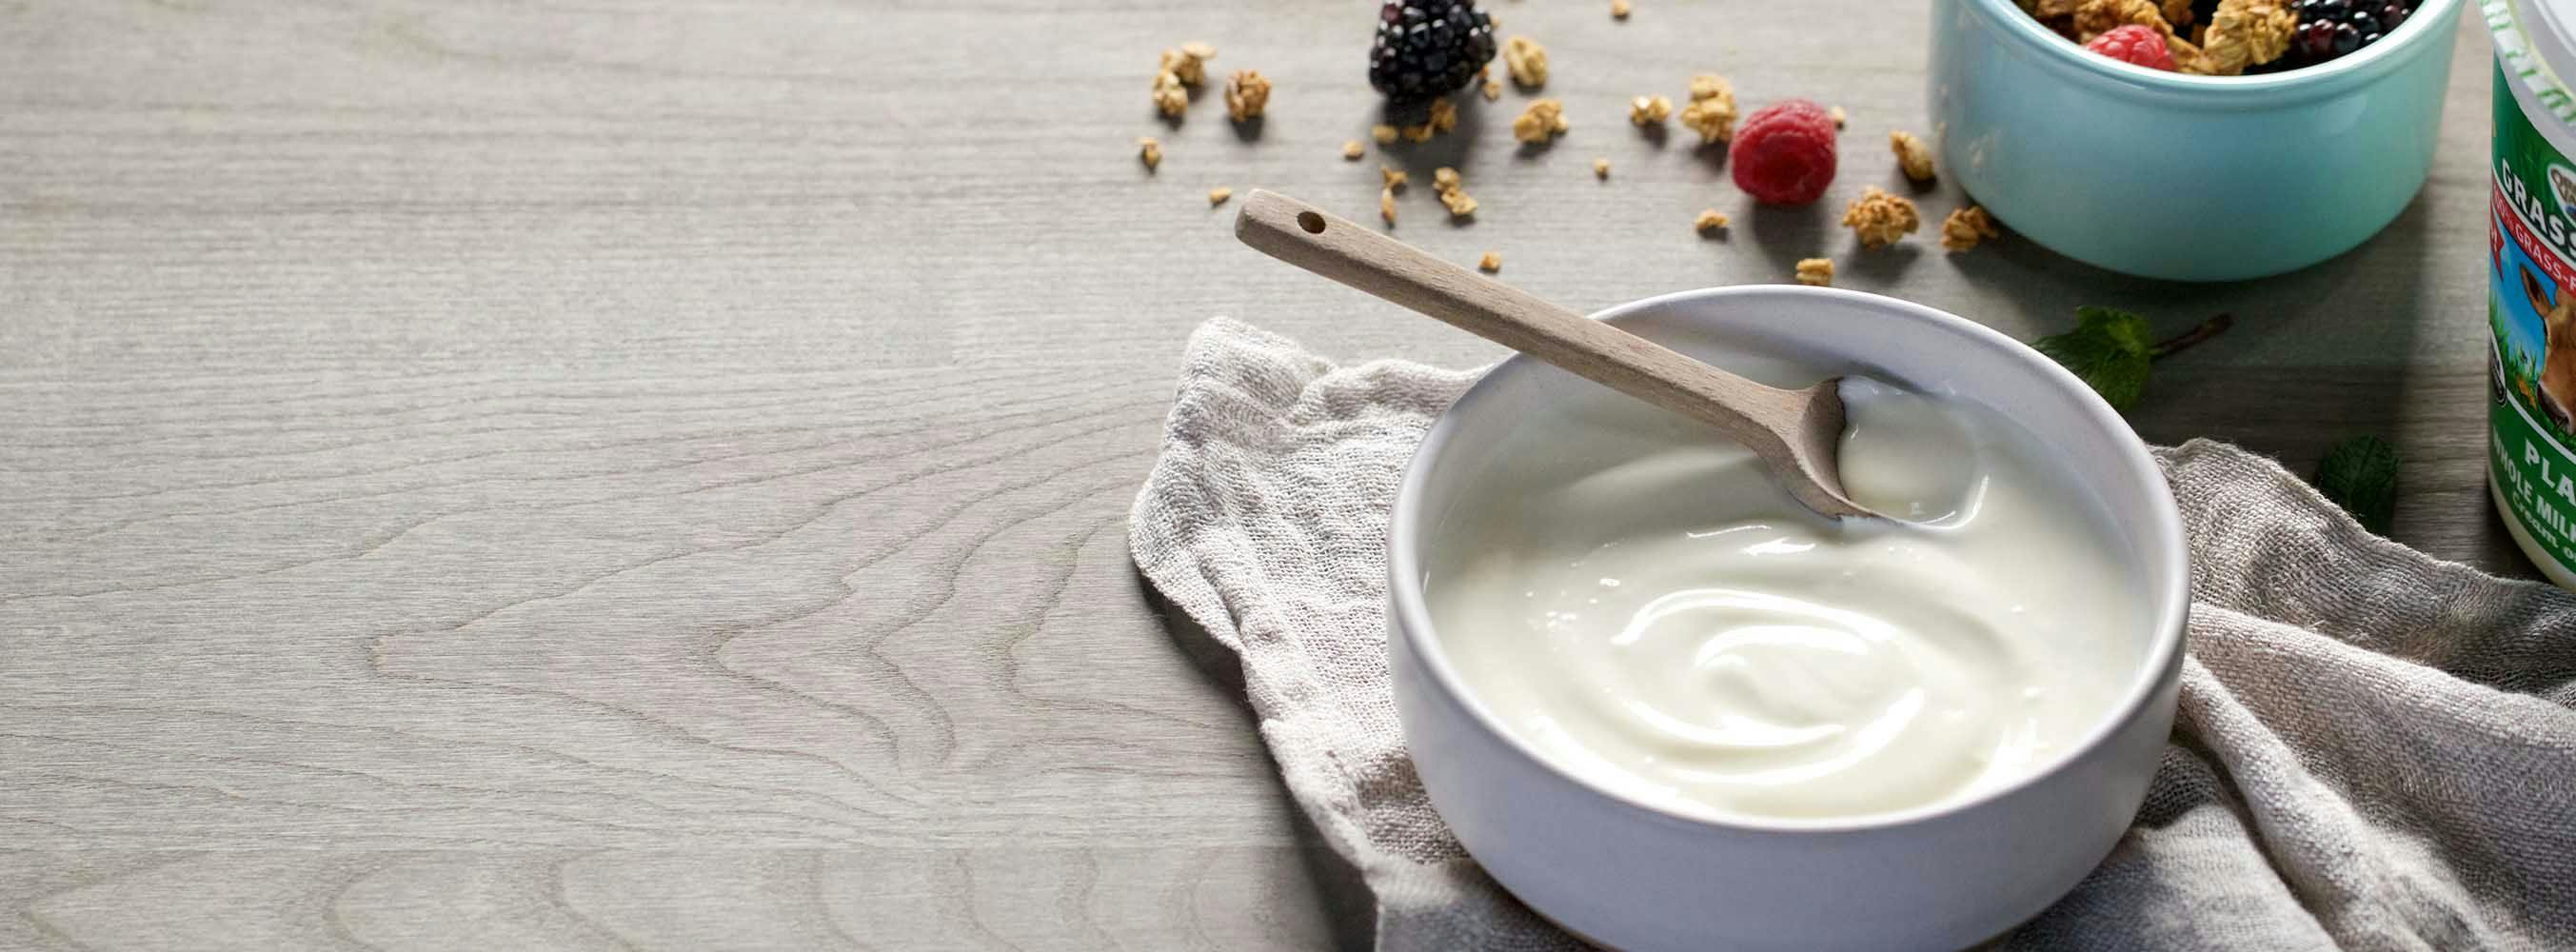 Organic Valley yogurt in a bowl